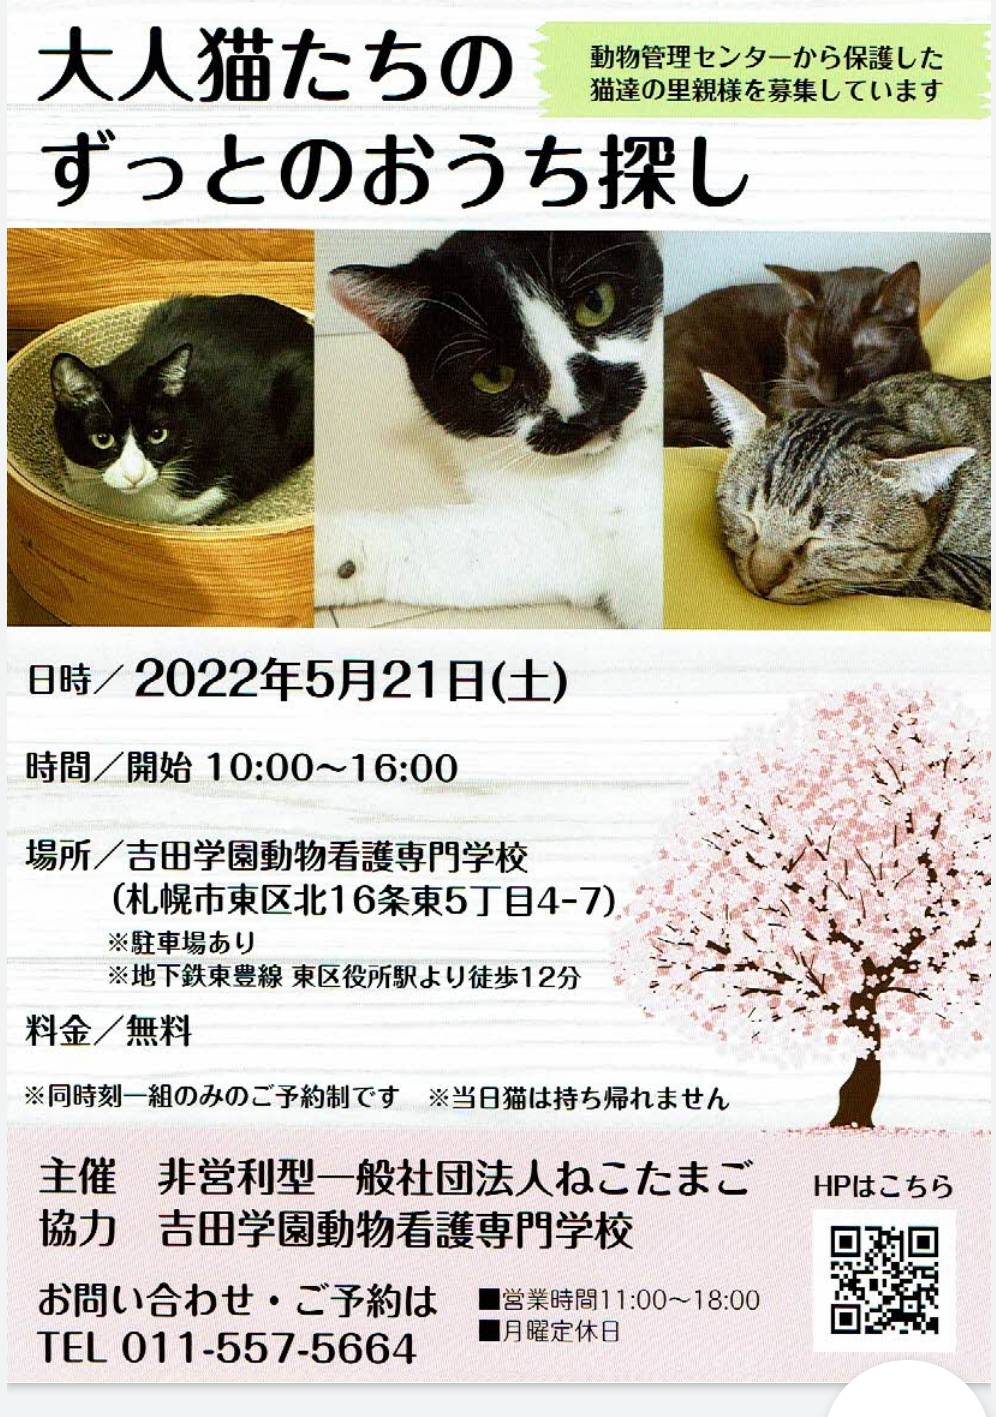 開催終了 保護猫譲渡会 札幌イベント情報マガジン サツイベ Event Id